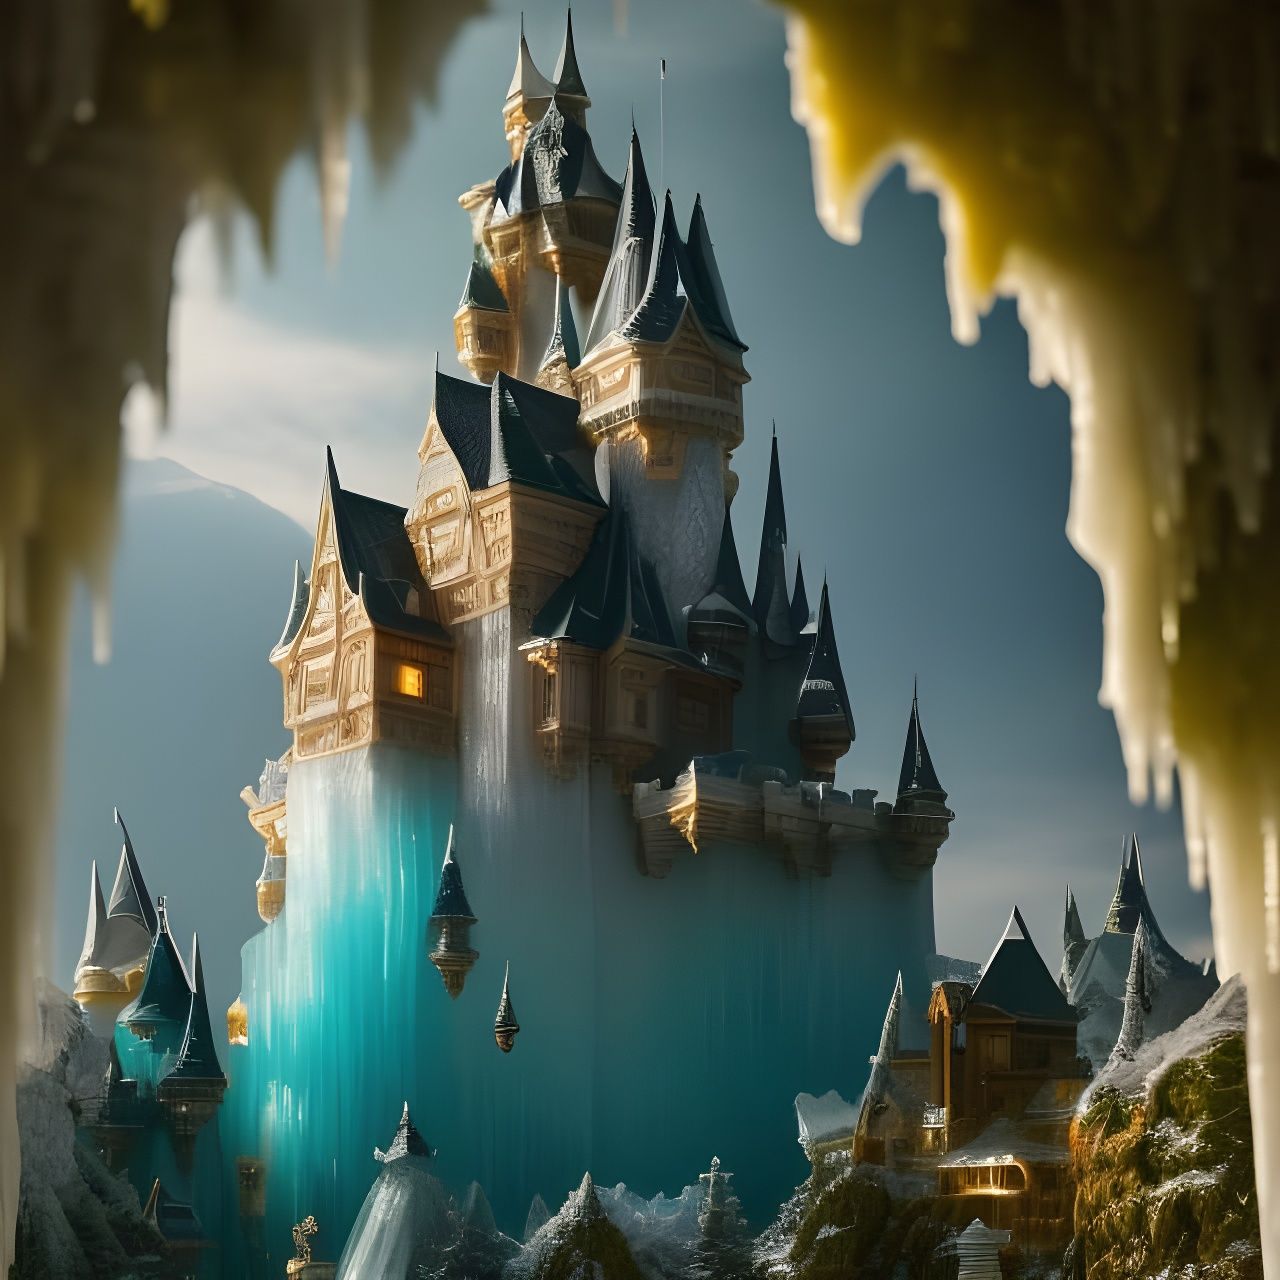 Frozen castle, frozen, castle, cartoon castle png